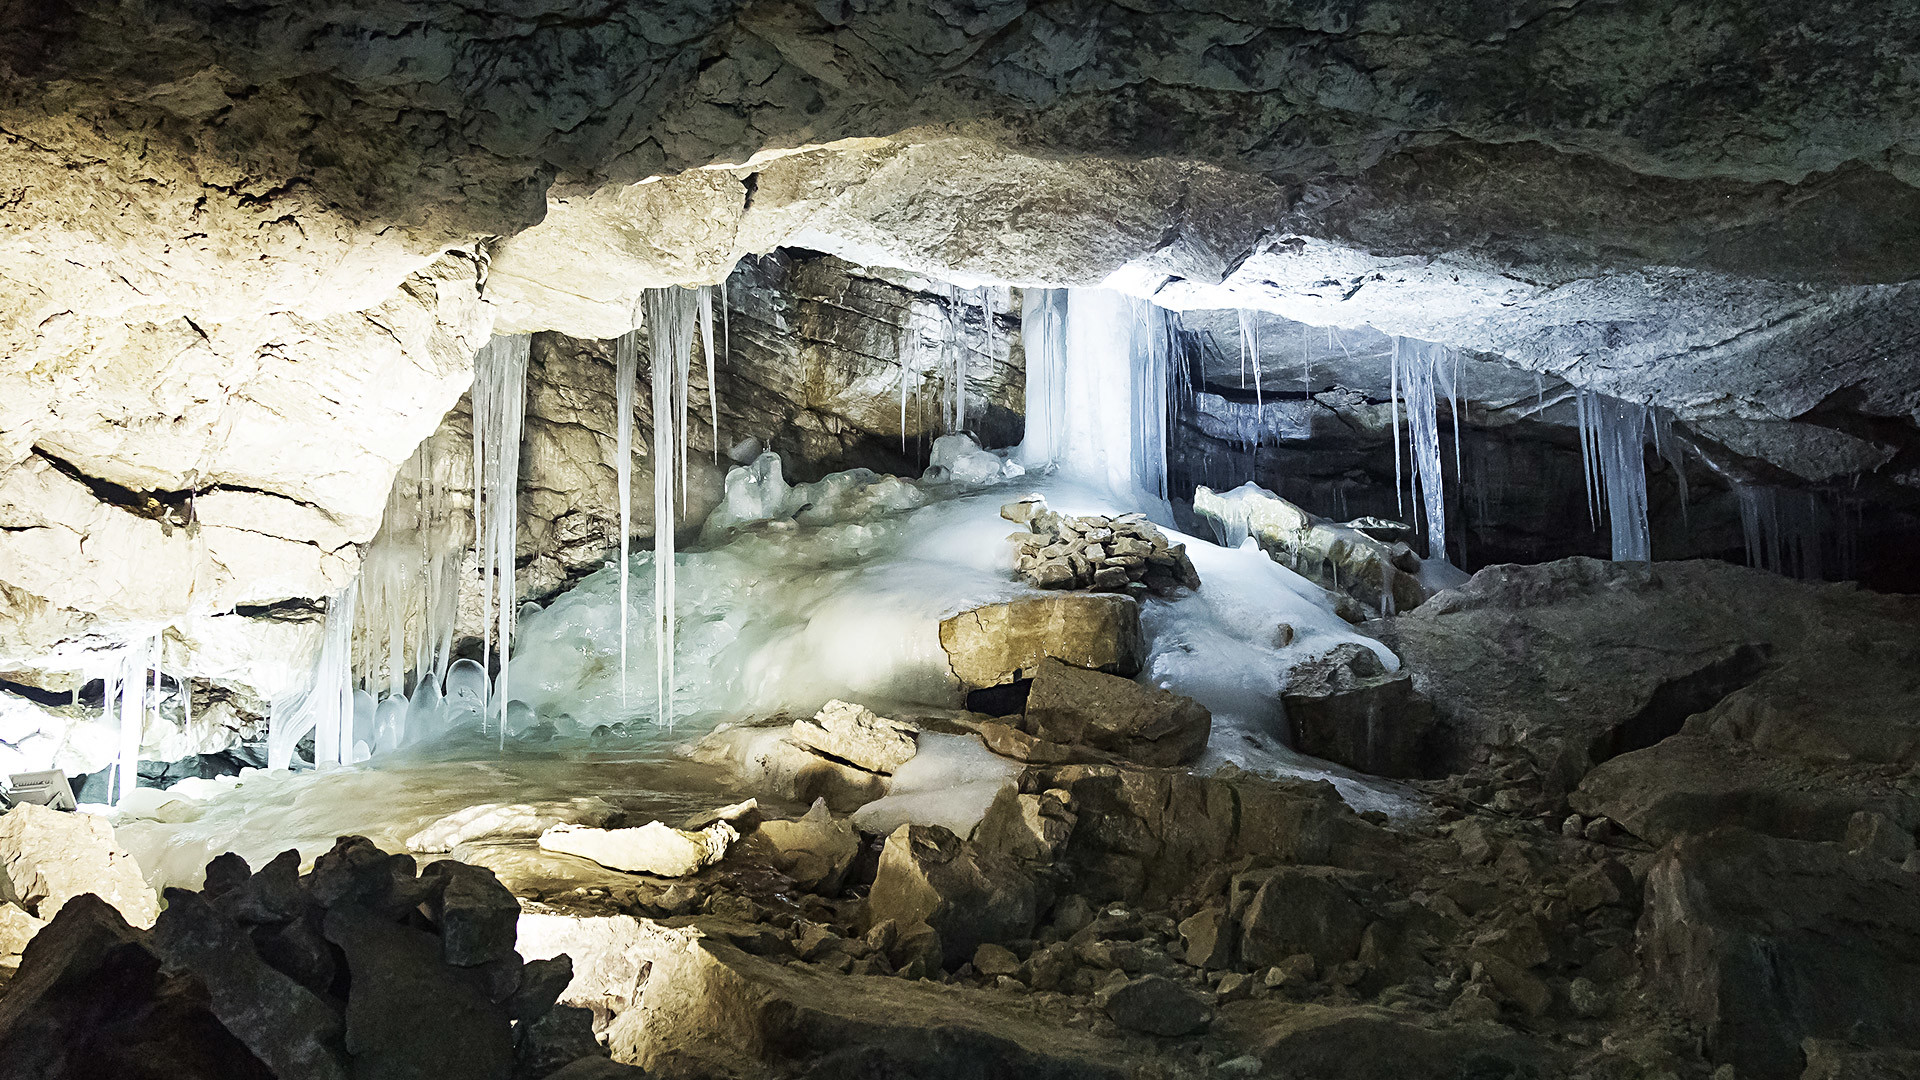 Riesige Stalaktiten hängen über den Köpfen, uralte Eisblöcke liegen im Raum verstreut. Dazwischen erstrecken sich scheinbar bodenlose Seen. Die Kungur-Eishöhle in den Bergen des Mittel-Urals ist ein 40 Meter langer Permafrost-Tunnel und teilweise um die 300 Jahre alt.